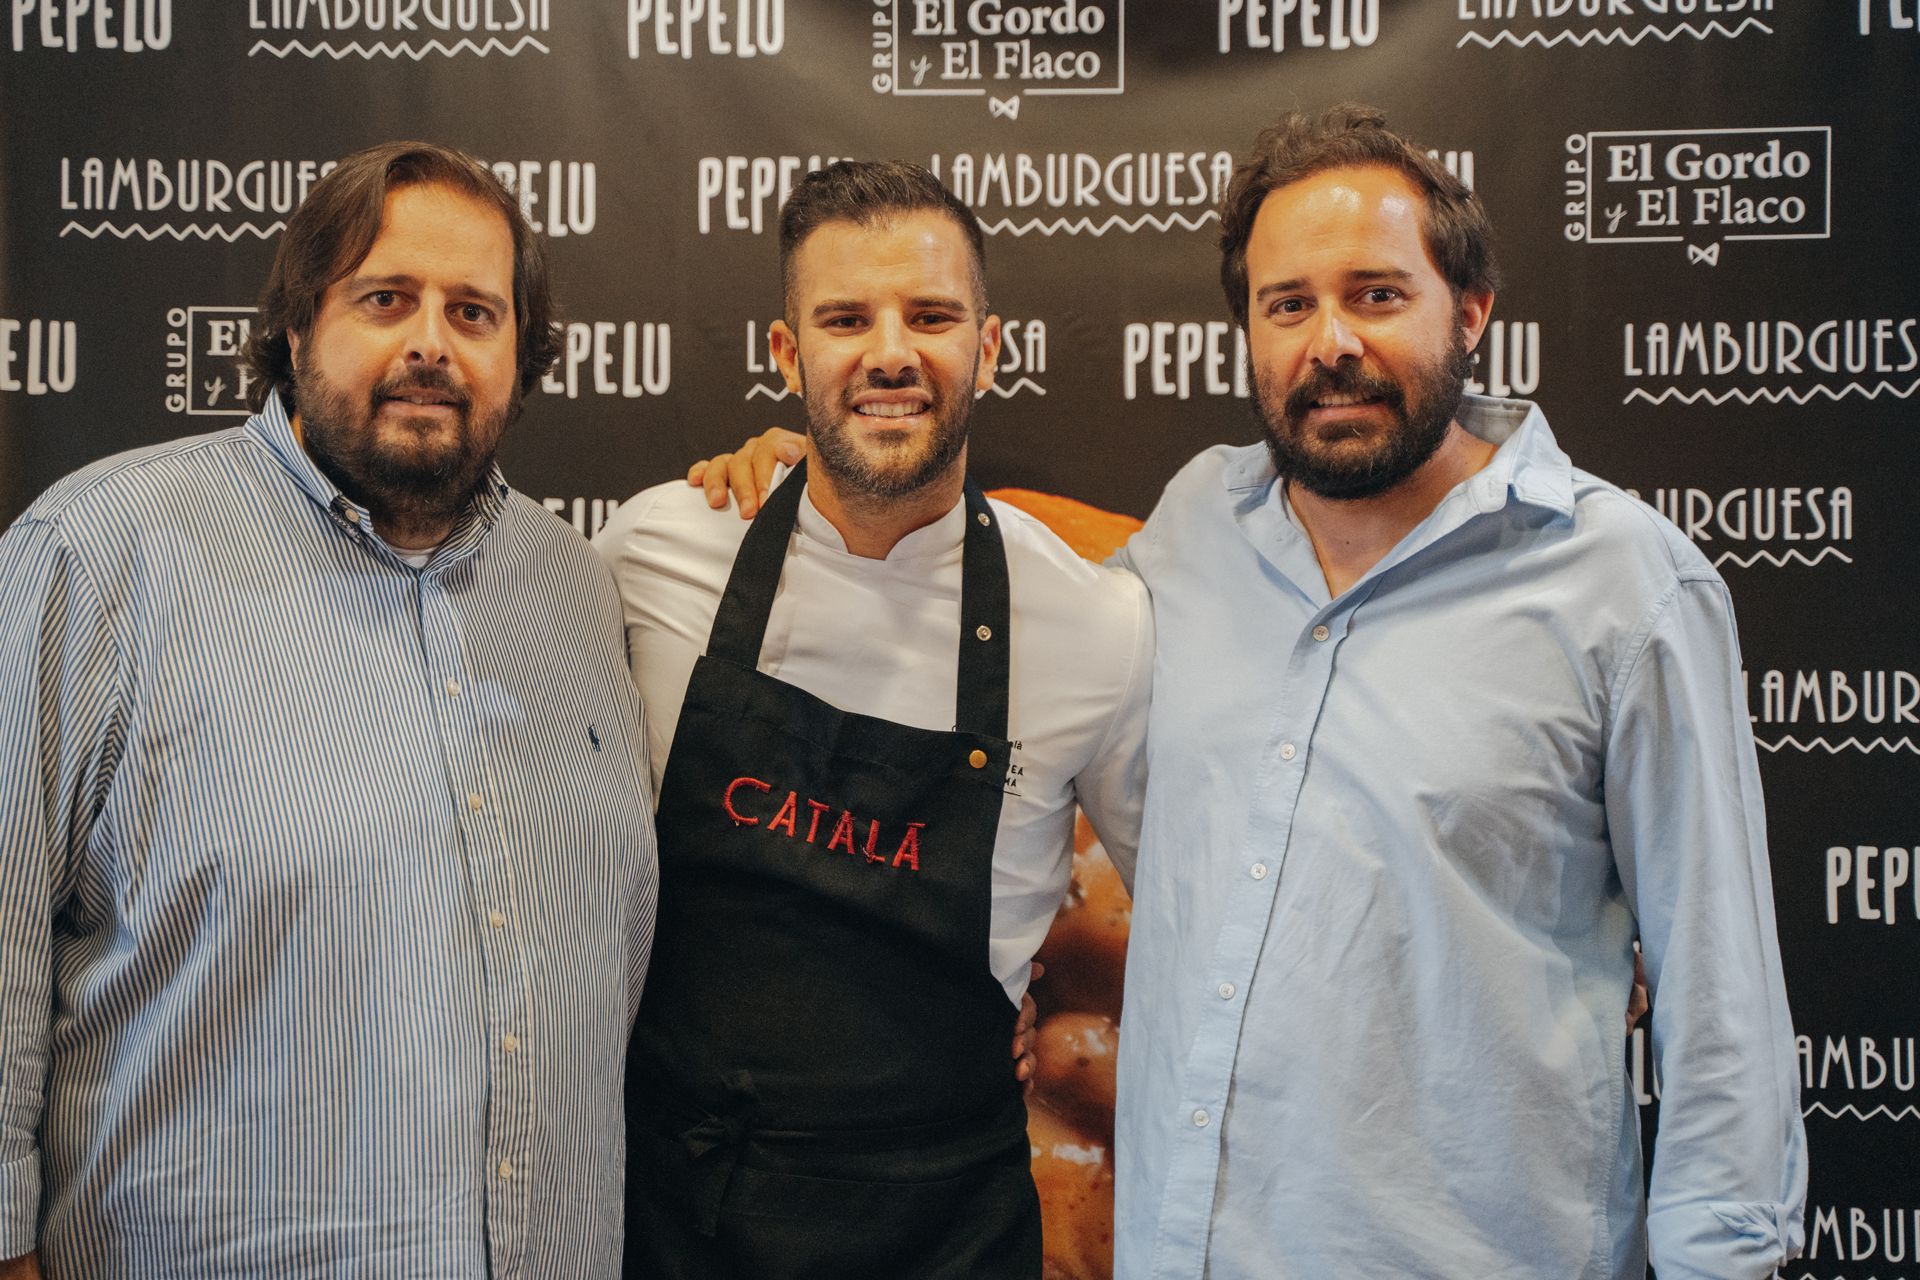 Salva, Pablo y Carlos Catalá (propietario de la Carnicería Catalá)